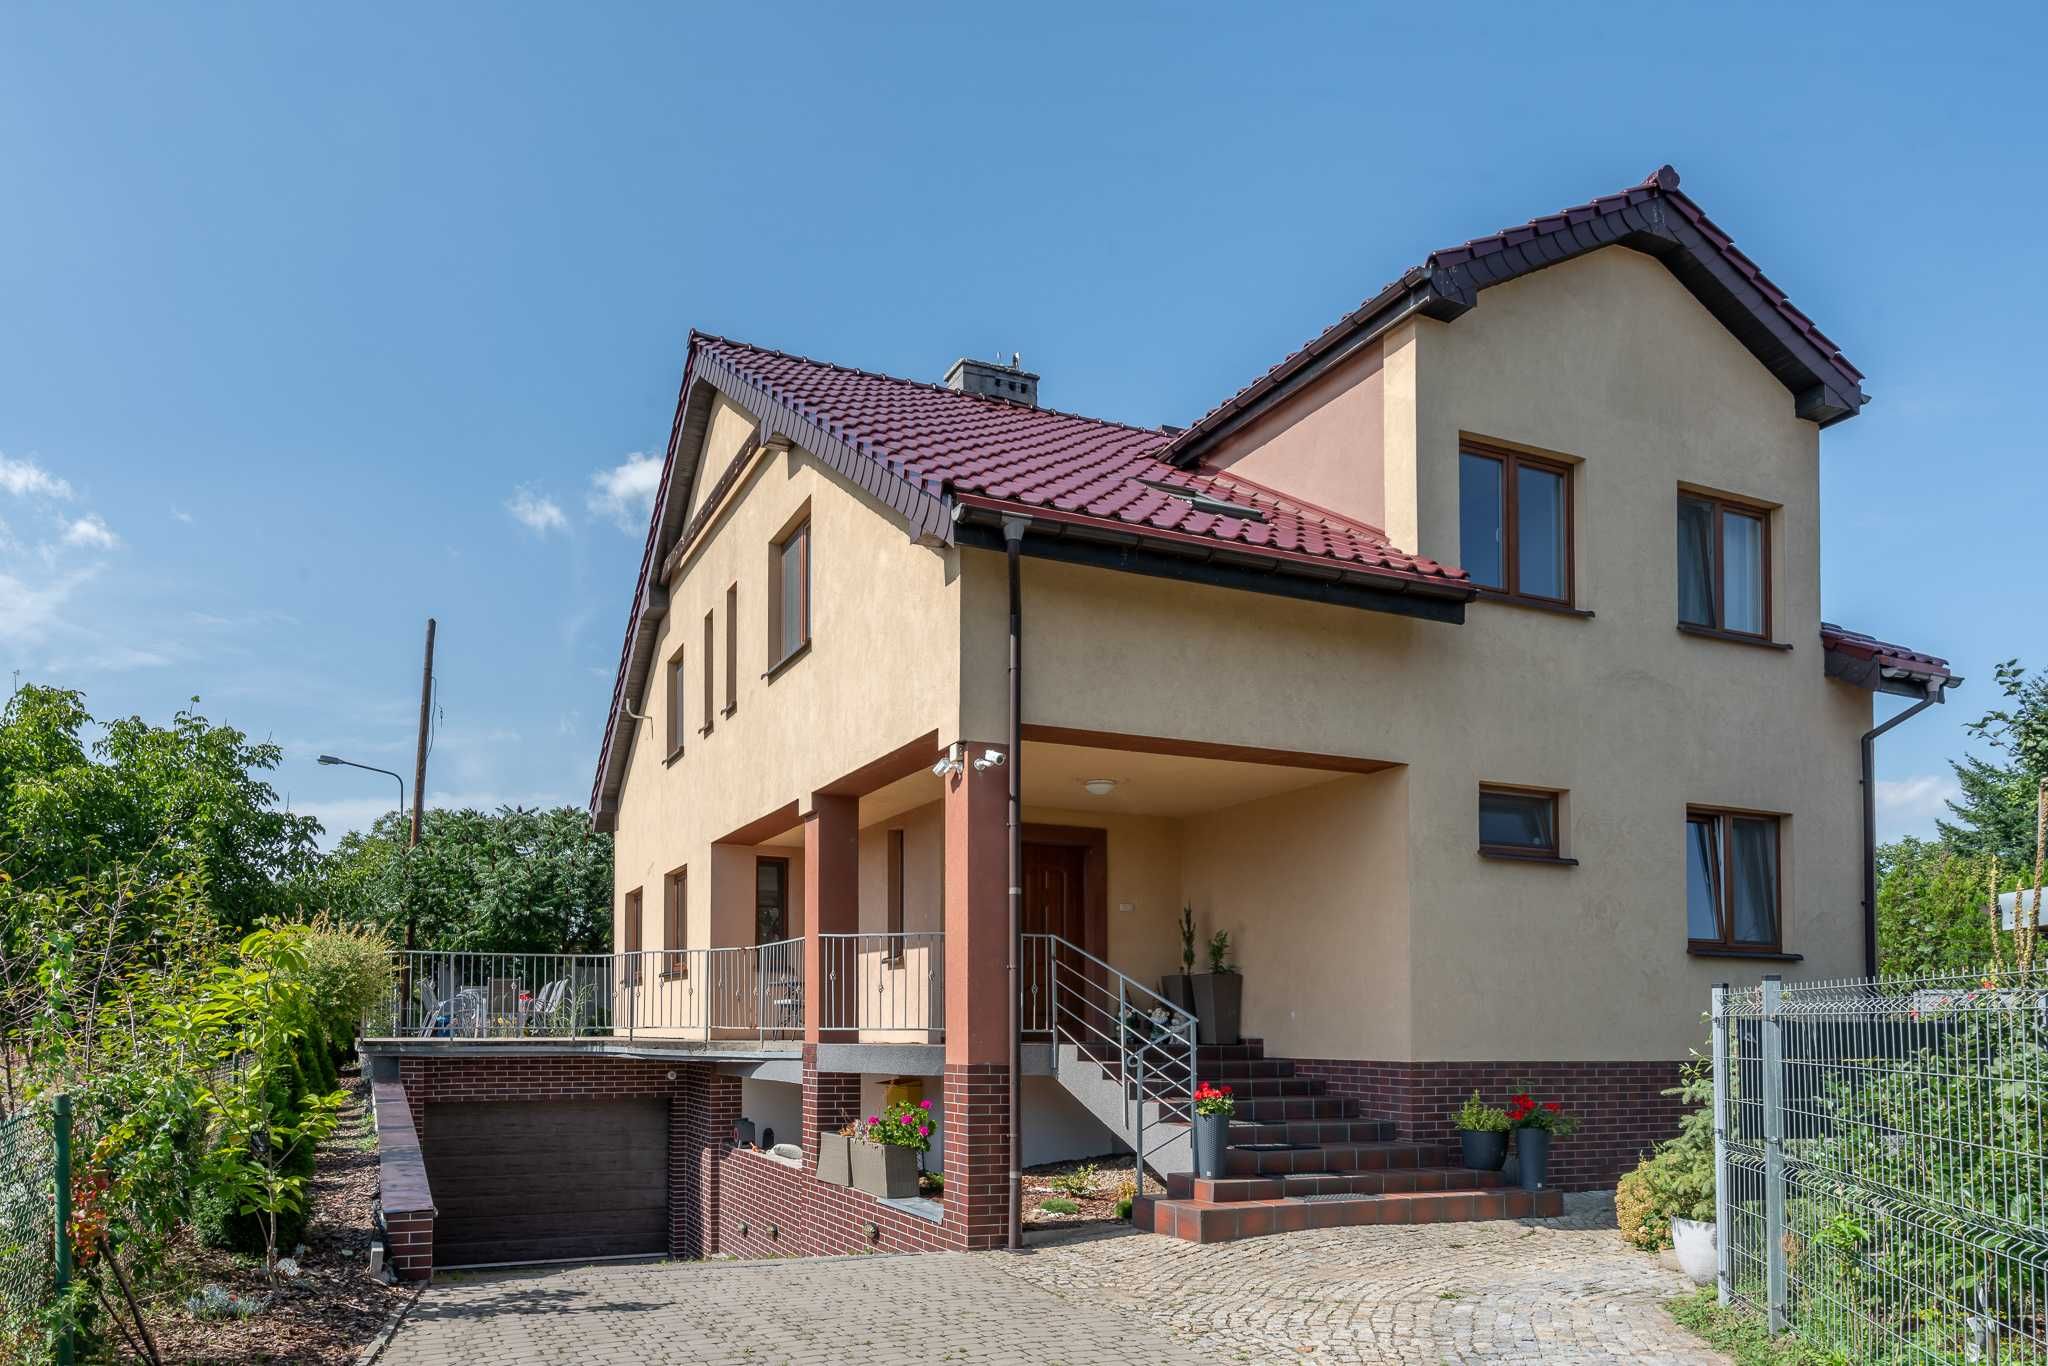 Dom z noclegiem na 18 osób Wrocław -fabryczna